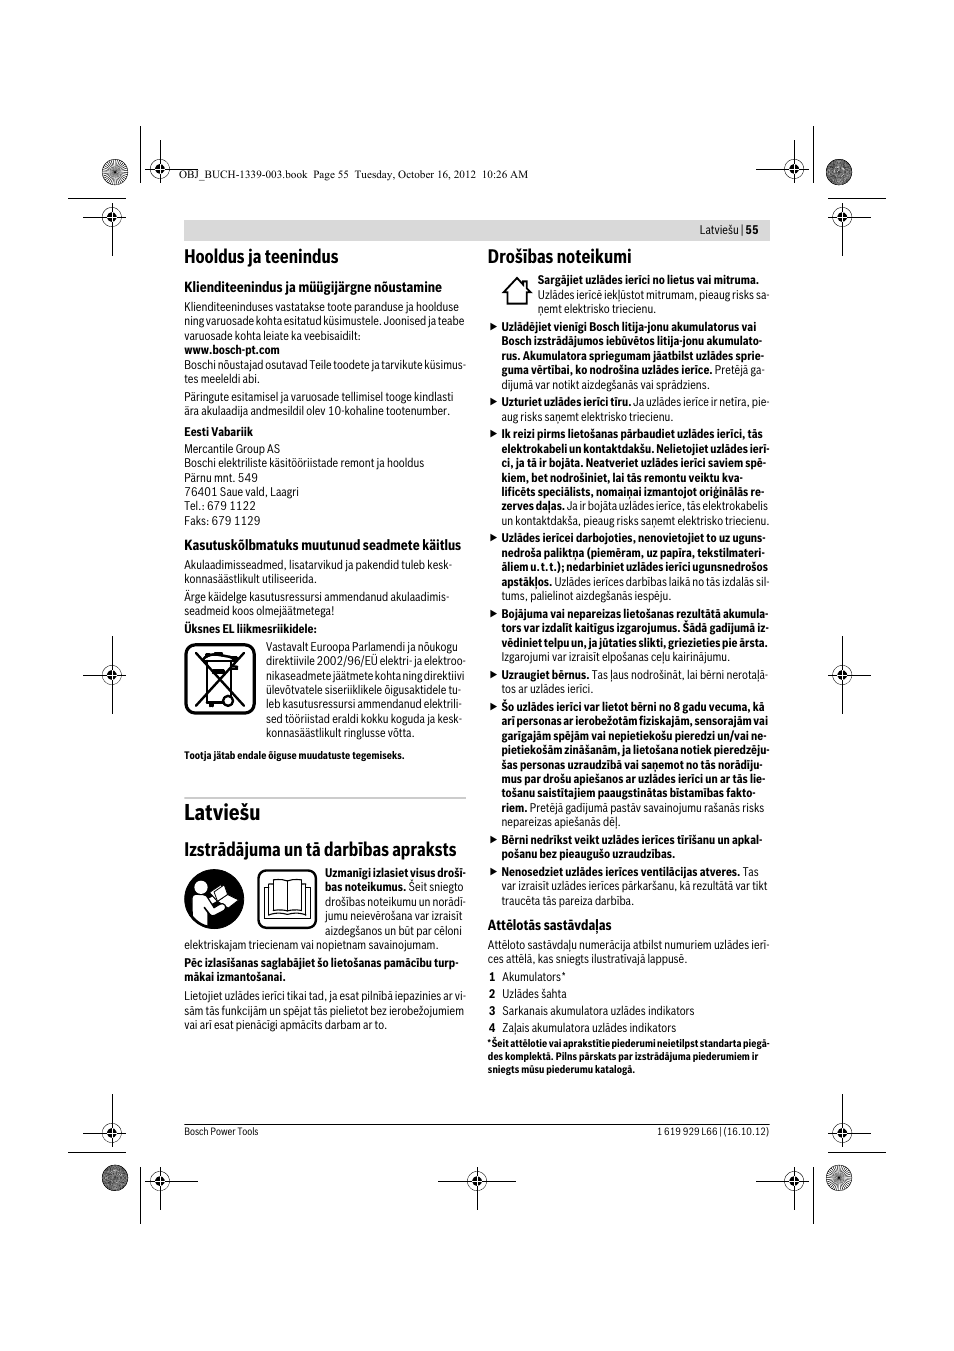 Latviešu, Hooldus ja teenindus, Izstrādājuma un tā darbības apraksts | Bosch  AL 1130 CV User Manual | Page 55 / 65 | Original mode